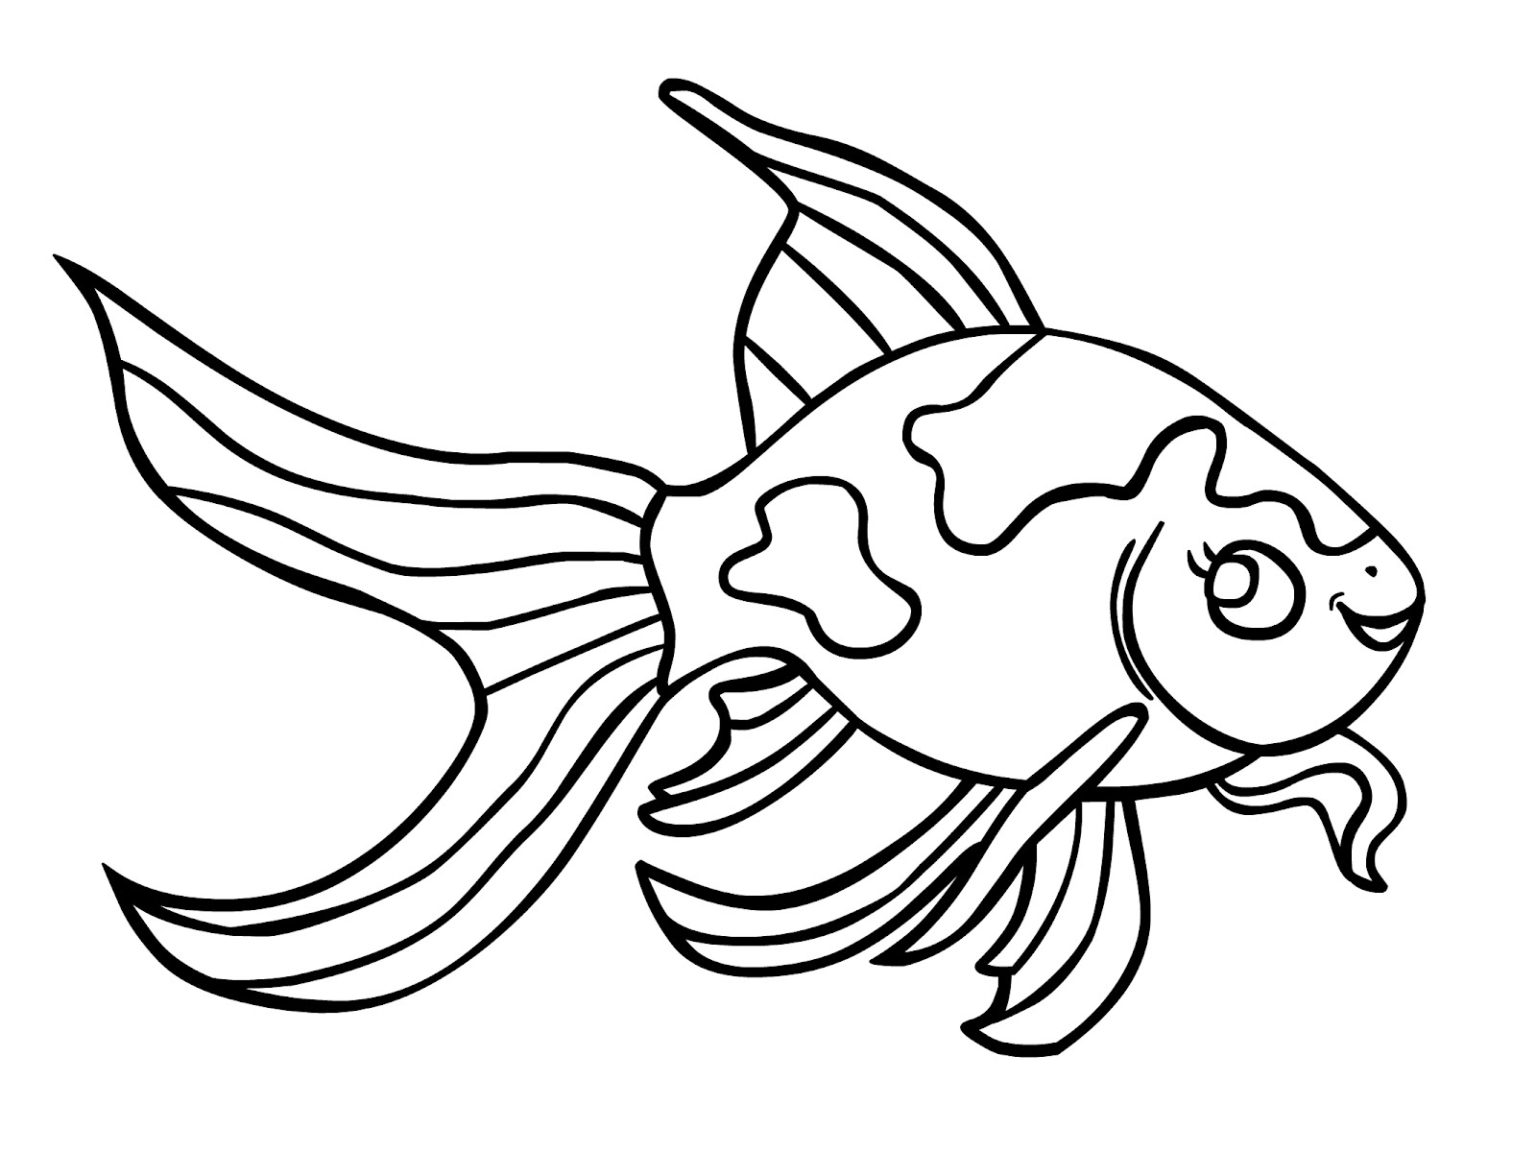 Cá vàng là một loại cá rất đáng yêu và được yêu thích trên toàn thế giới. Hãy xem những hình vẽ cá vàng đẹp mắt này để tìm hiểu thêm về loài cá này.